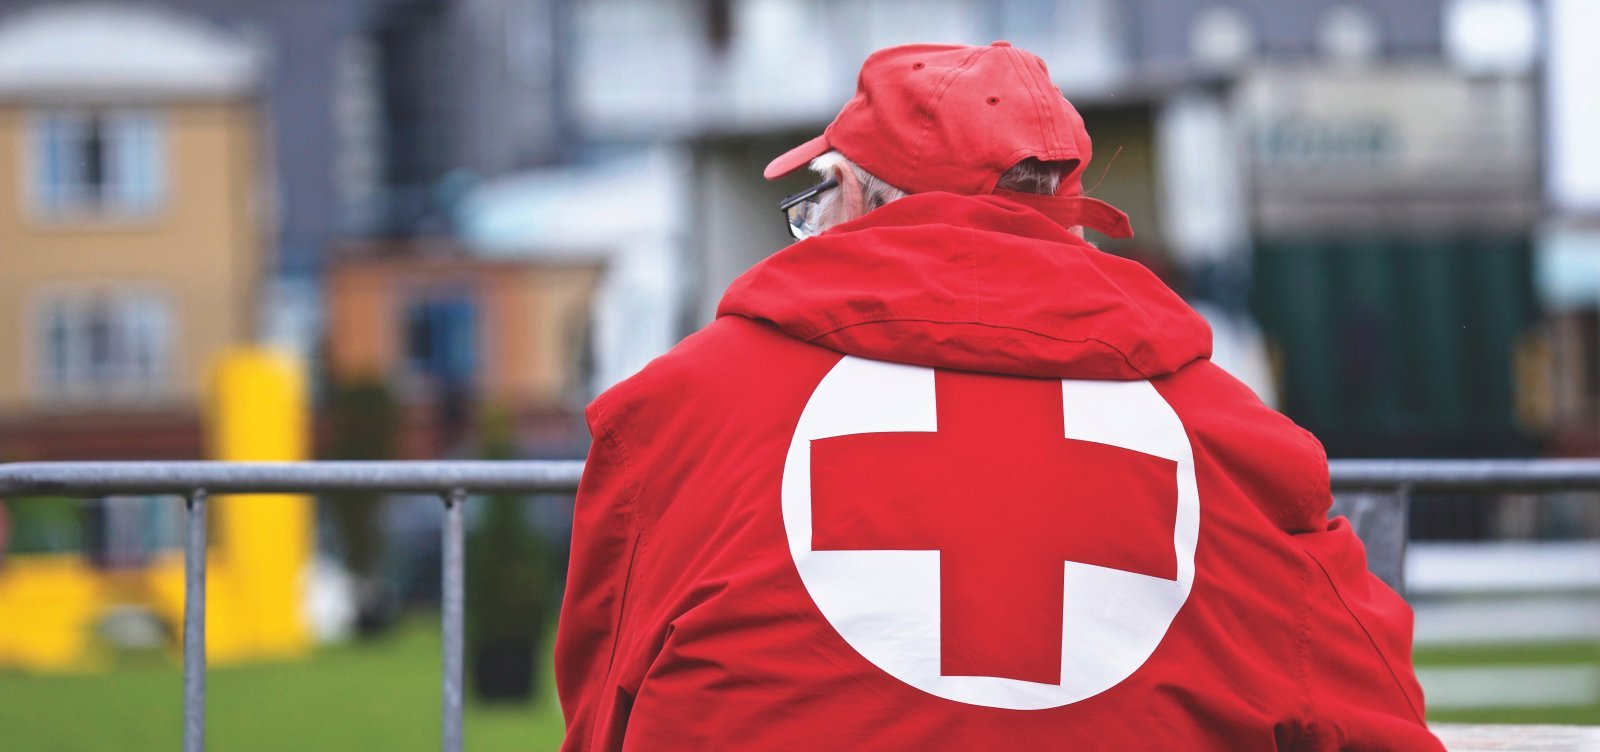 Cruz Vermelha entrega quatro toneladas de mantimentos na Venezuela